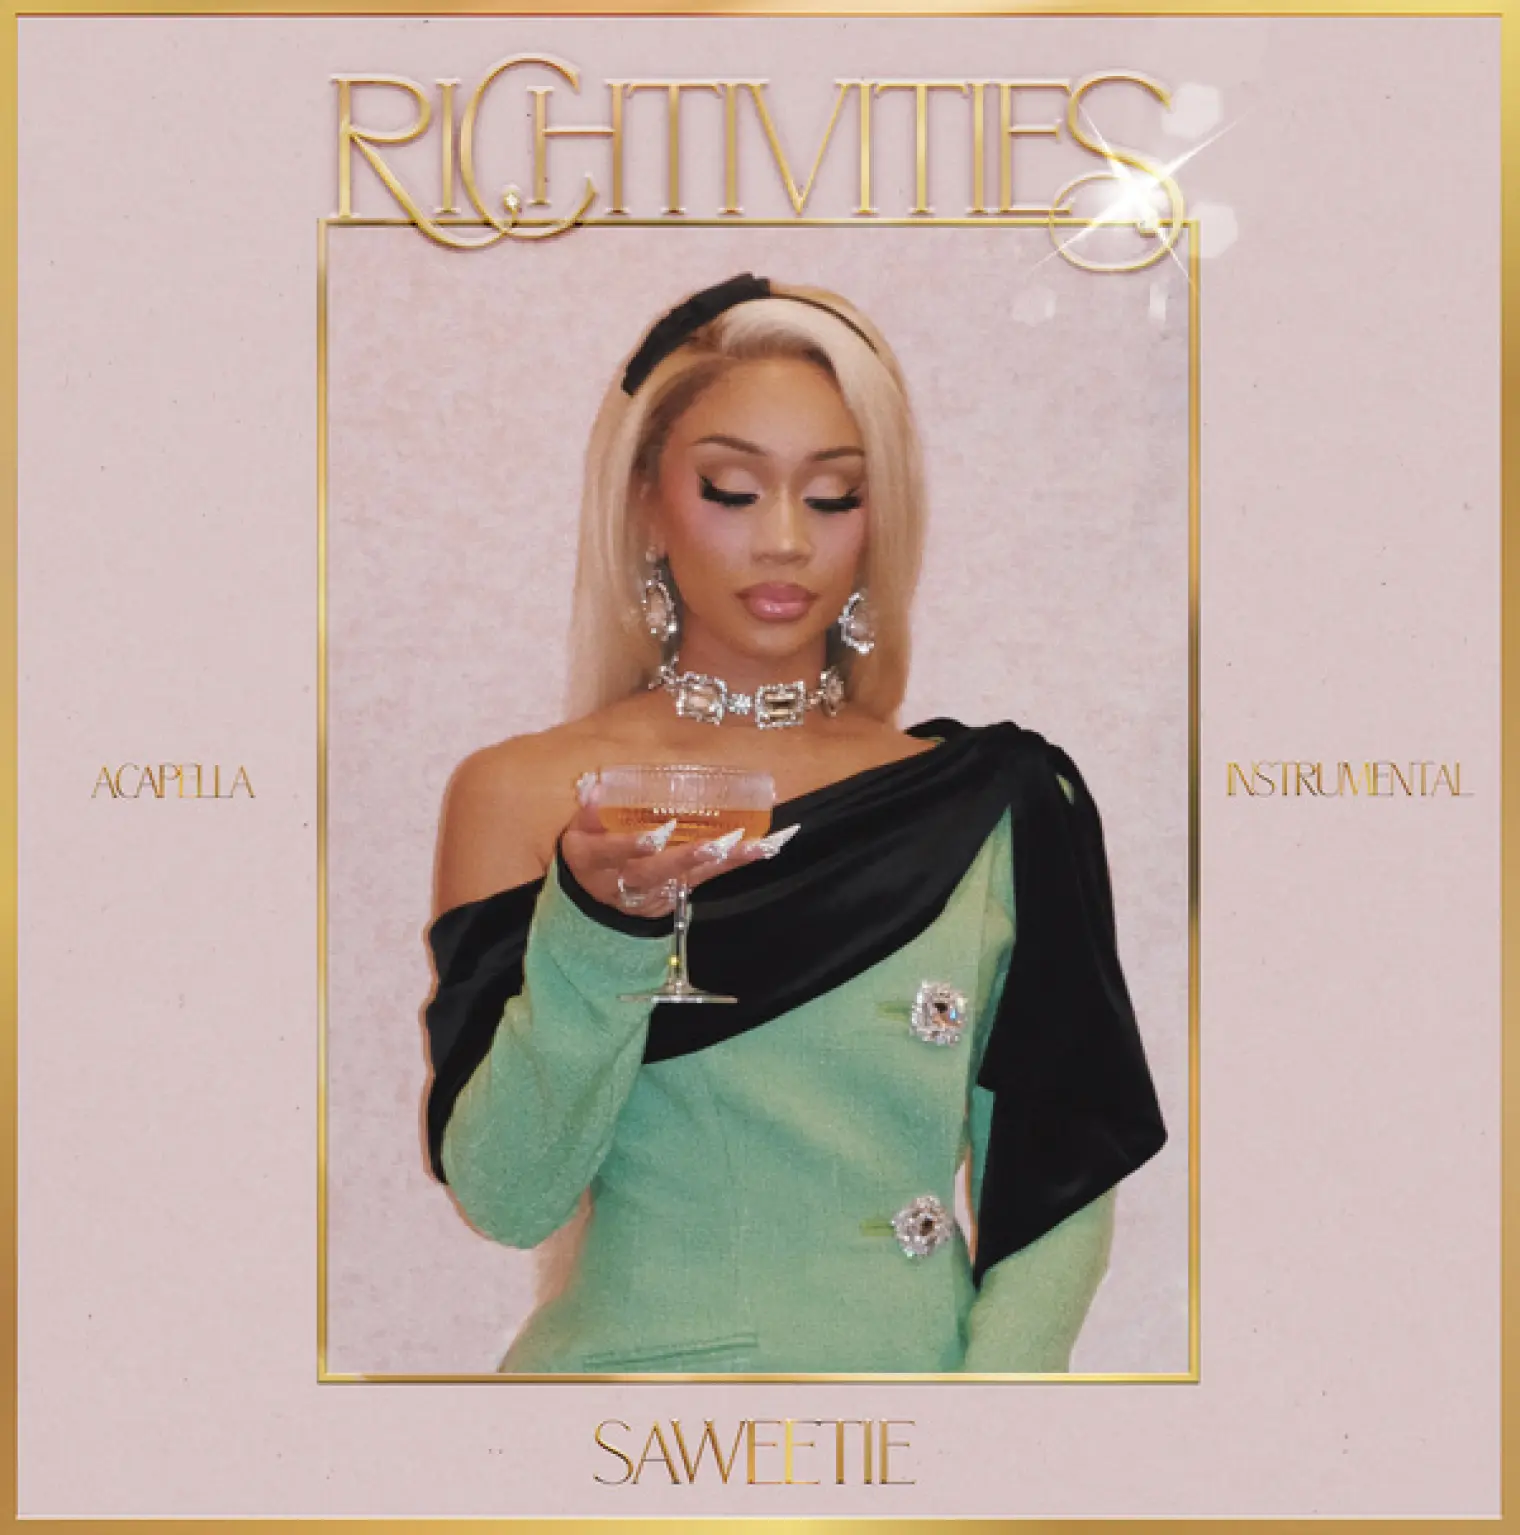 Richtivities (Acapella/Instrumental) -  Saweetie 